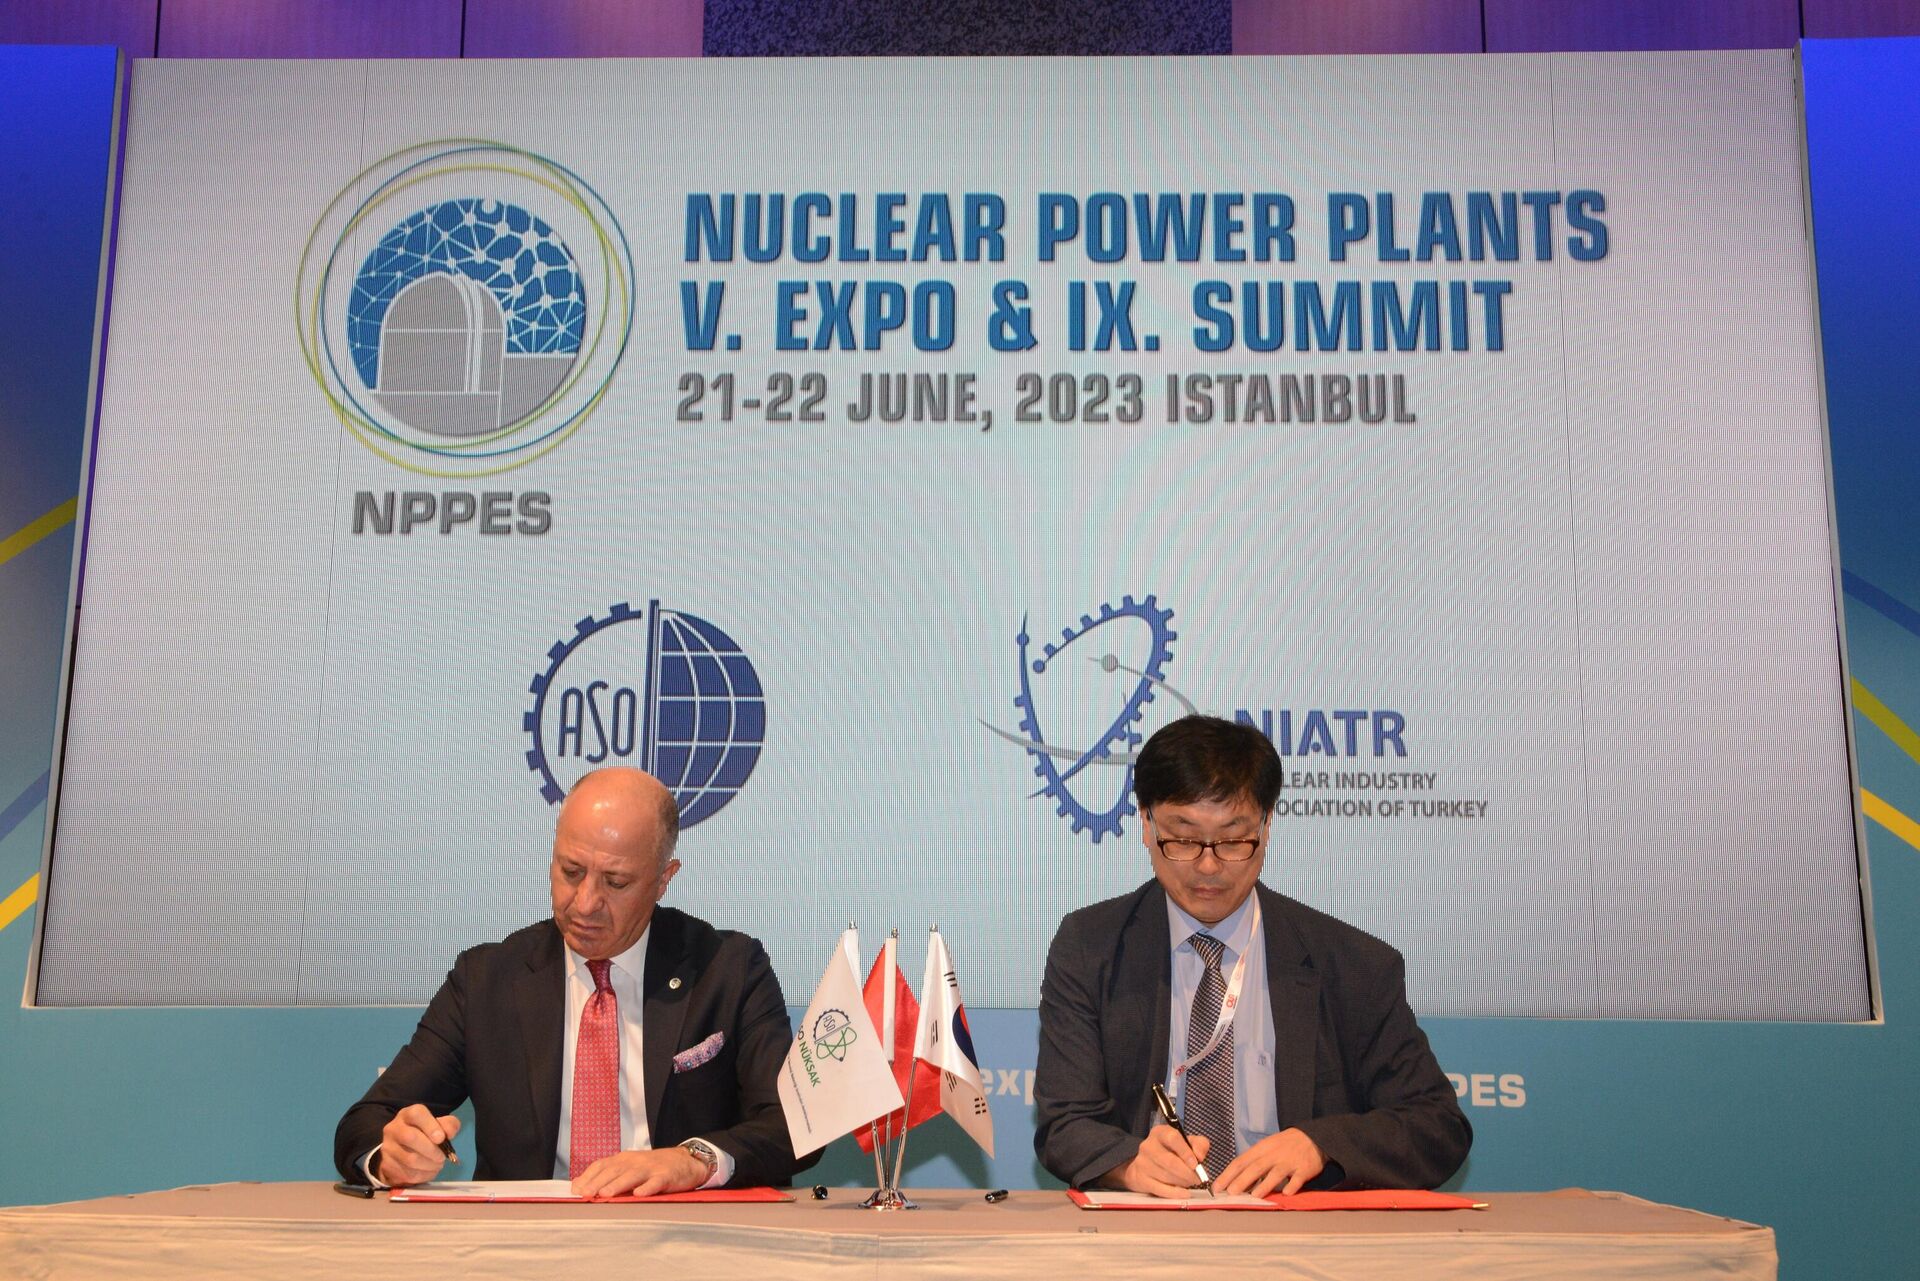 İşbirliği anlaşması, ASO Başkanı Seyit Ardıç ile KNA Başkan Yardımcısı Min-Cheol Lee arasında imzalandı. Anlaşmaya göre, ASO NÜKSAK ve Güney Kore Nükleer Derneği (KNA) arasında küçük modüler reaktörler (SMR'ler) ve gelecekteki diğer yeni nesil reaktörler dahil olmak üzere nükleer enerji projeleri ve fırsatlarla ilgili ortak çalışmalar yürütülecek. Tarafların üye firmalarına yönelik Türkiye ve Güney Kore arasında dönüşümlü olarak çevrim içi veya çevrim dışı endüstriyel diyalogu artıracak toplantılar ve seminerler düzenlenecek. - Sputnik Türkiye, 1920, 21.06.2023